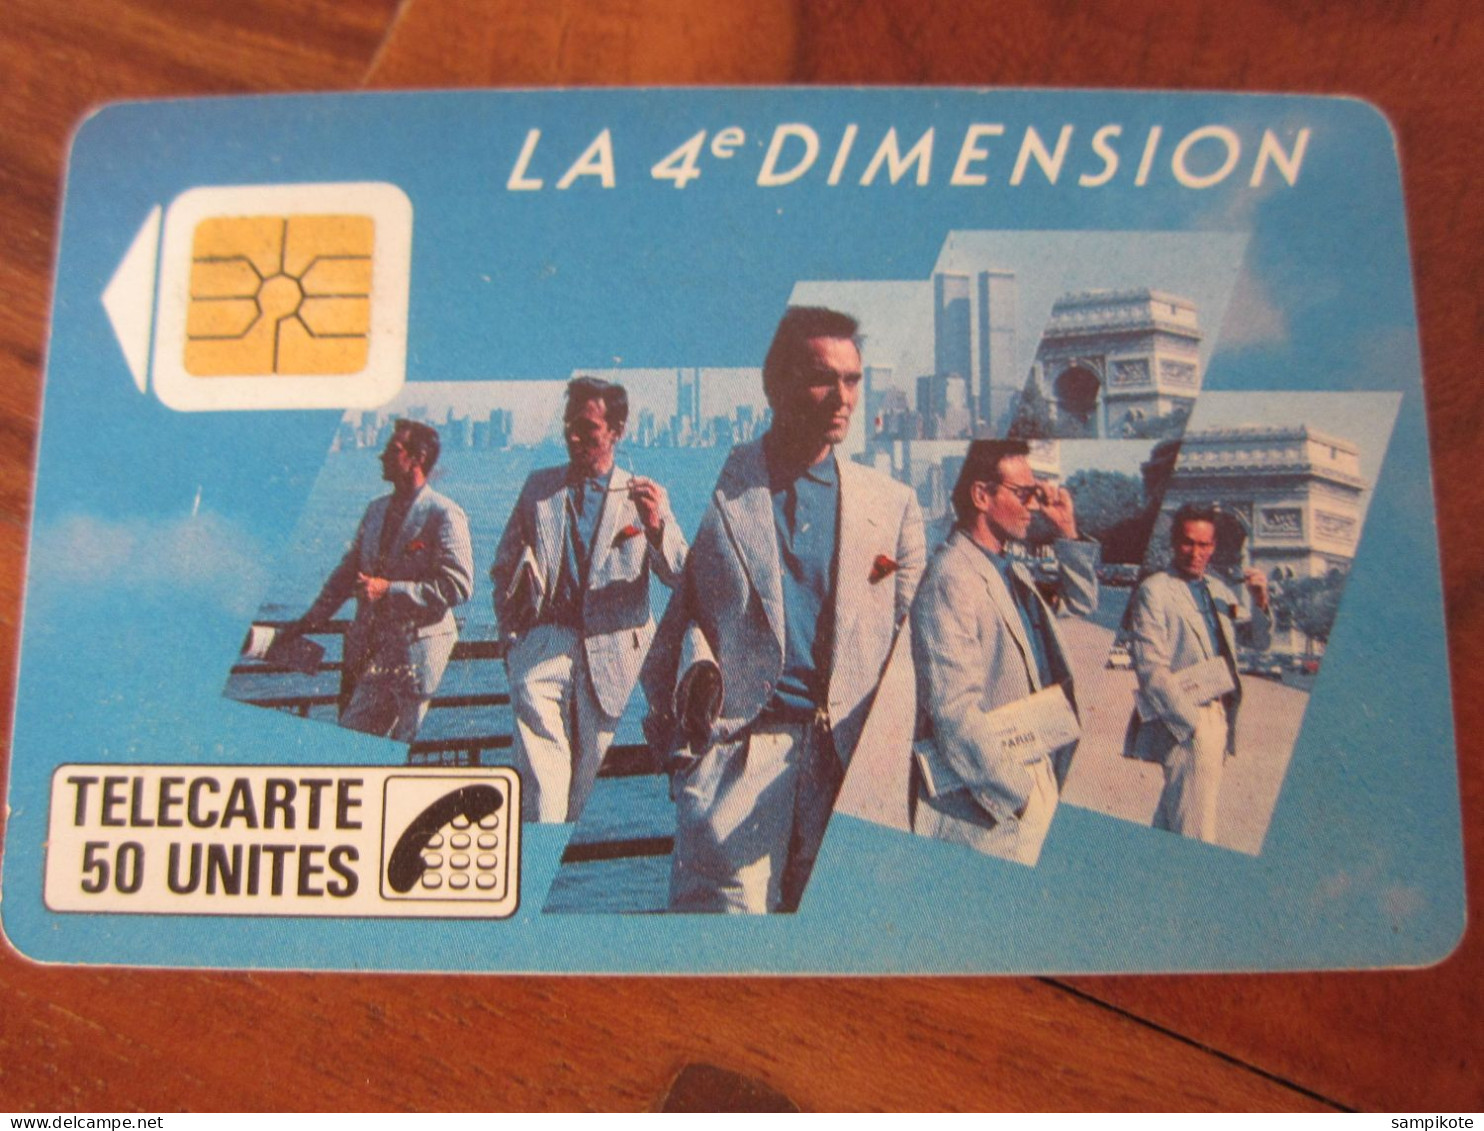 Télécarte Publicité 4ème Dimension - Téléphones